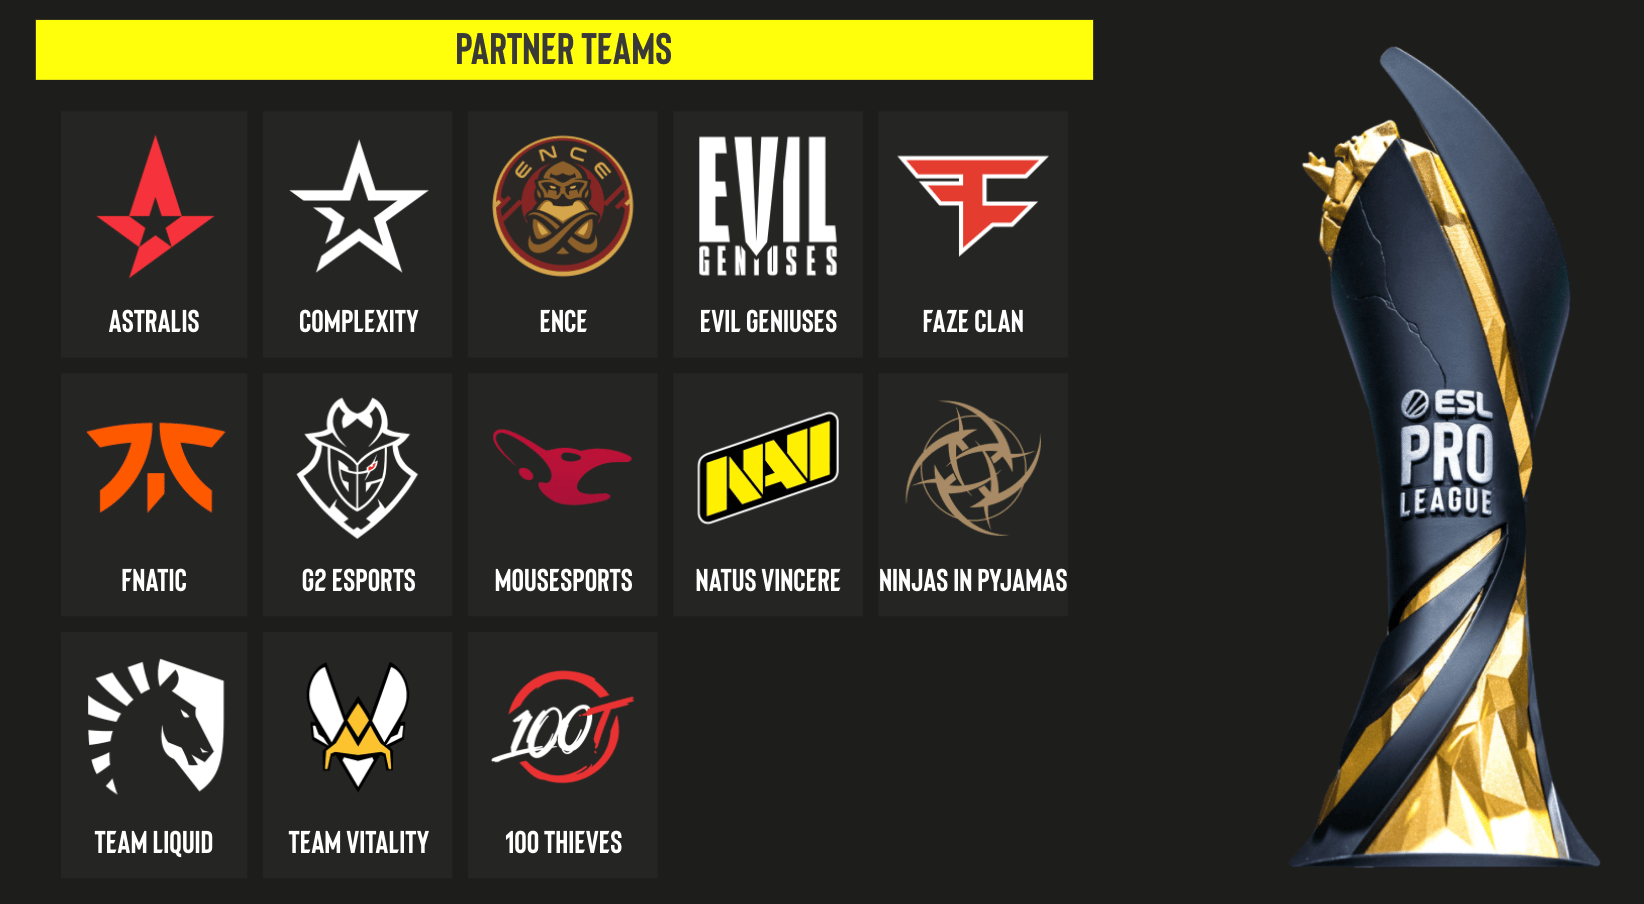 ESL's partner teams. 